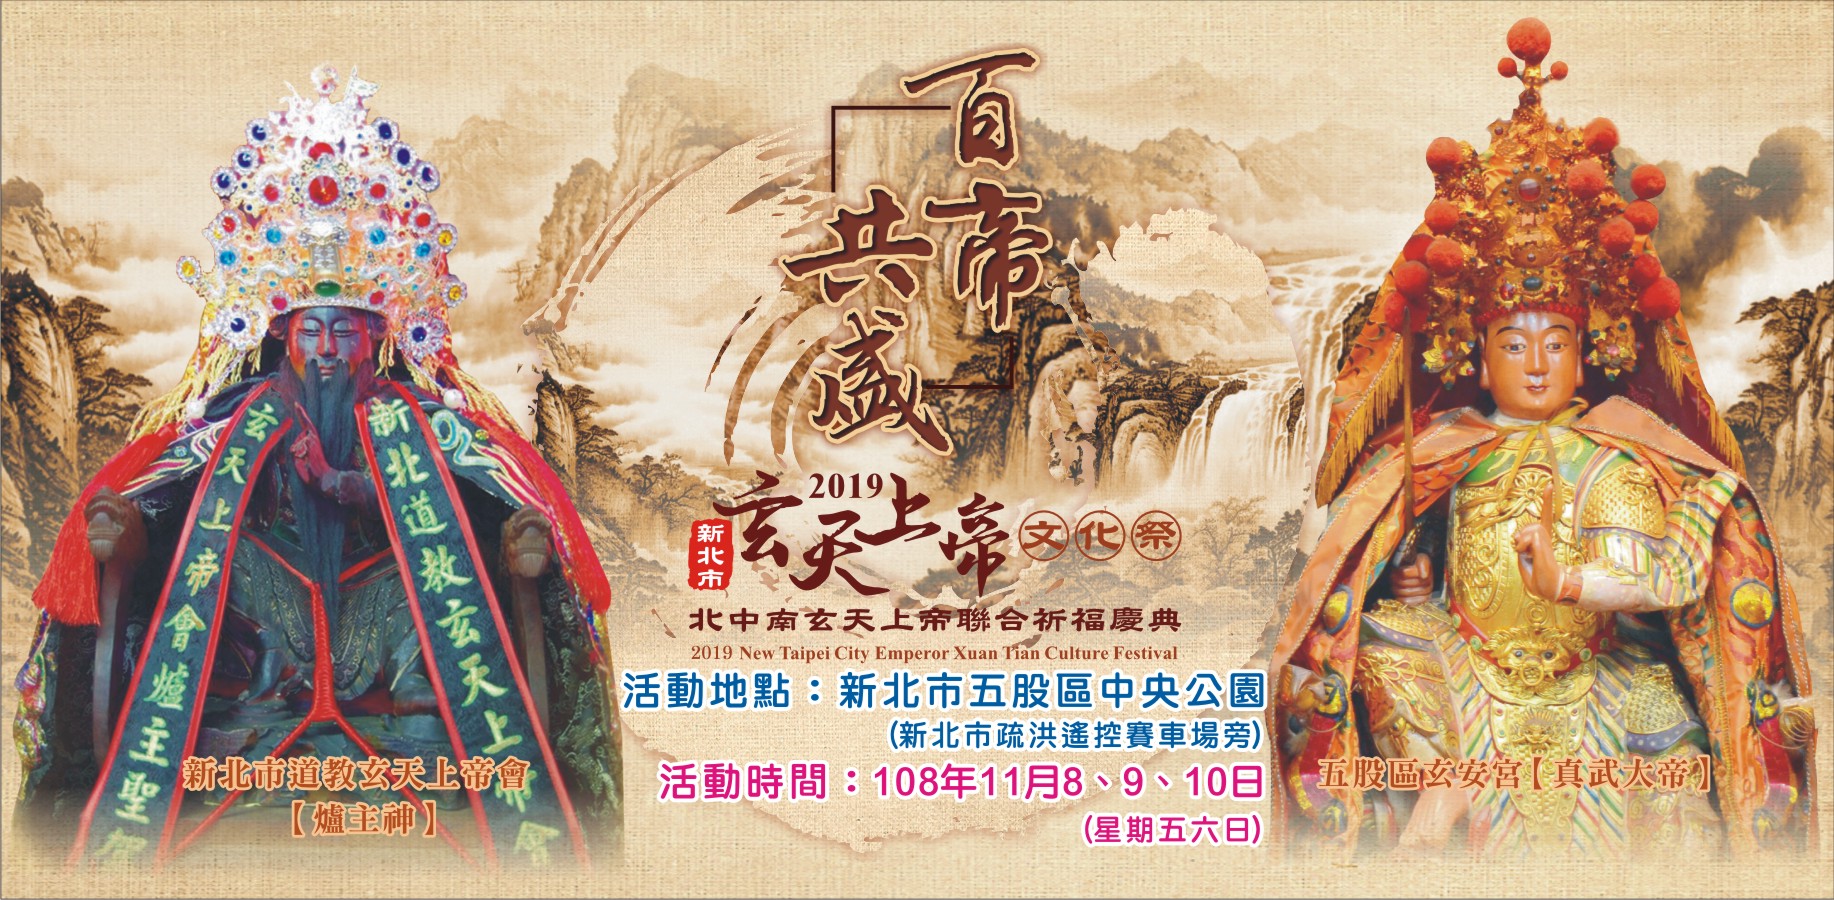 北台灣最大之玄天上帝慶典「新北市玄天上帝文化祭」將於11月8日起接連3天登場。